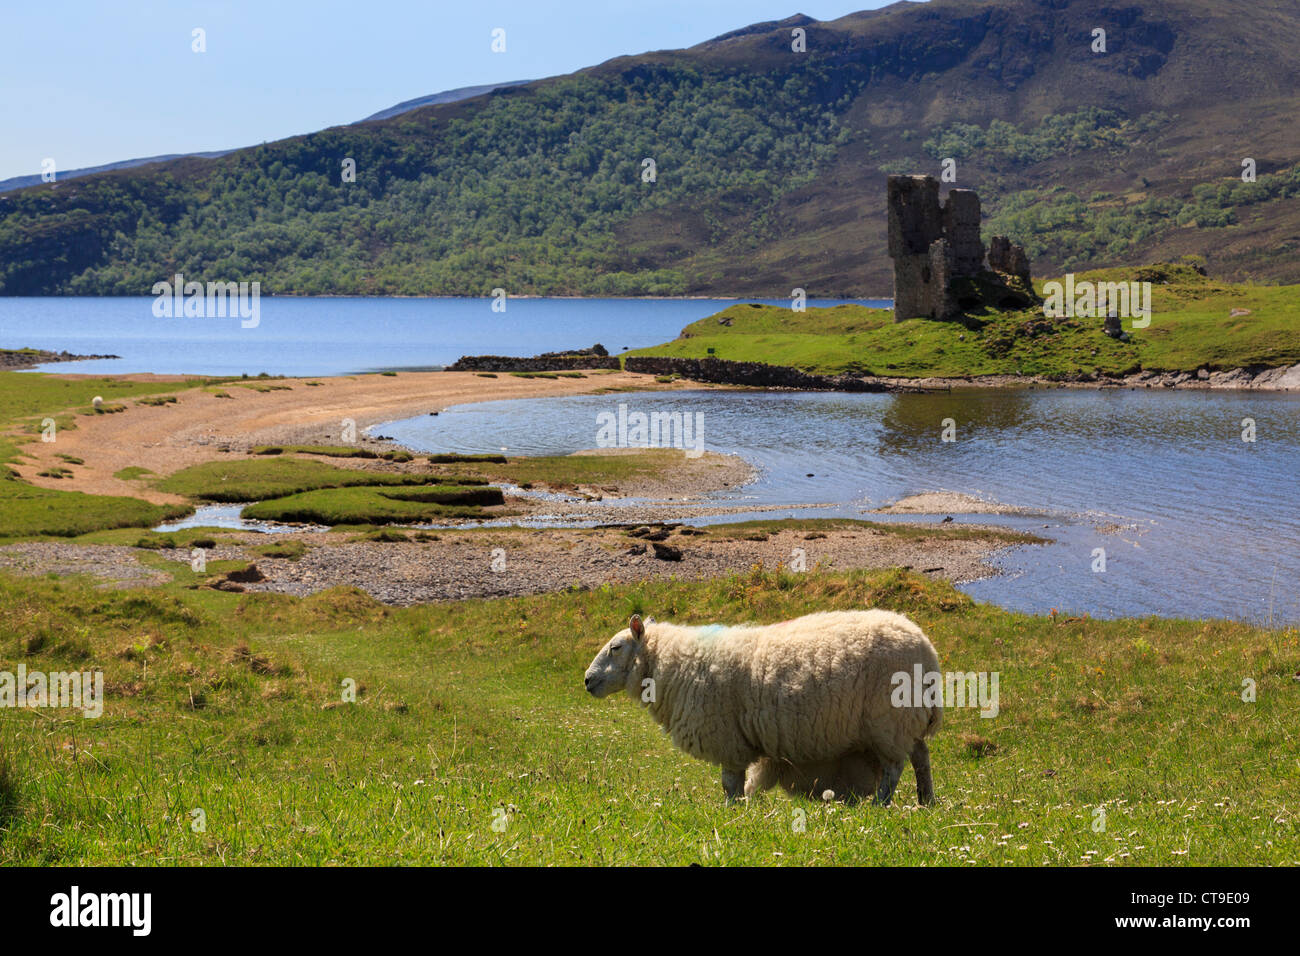 Schafe von Ardvreck Burgruine am Ufer des Loch Assynt im nordwestlichen schottischen Hochland in der Nähe von Inchnadamph Sutherland Schottland, Vereinigtes Königreich Stockfoto